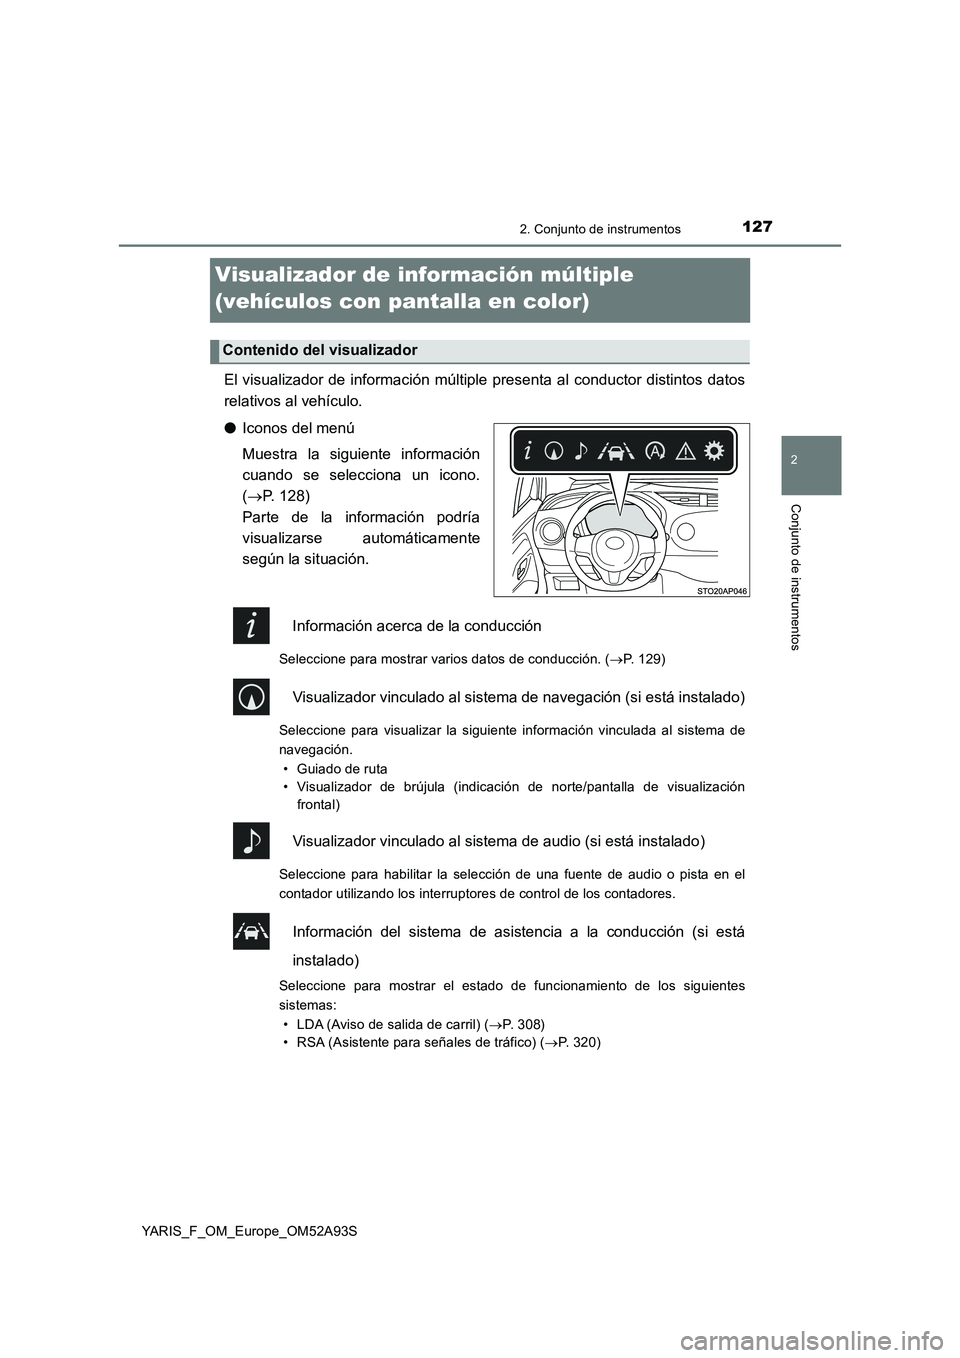 TOYOTA YARIS 2020  Manuale de Empleo (in Spanish) 127
2
2. Conjunto de instrumentos
Conjunto de instrumentos
YARIS_F_OM_Europe_OM52A93S
Visualizador de información múltiple 
(vehículos con pantalla en color)
El visualizador de información múltip